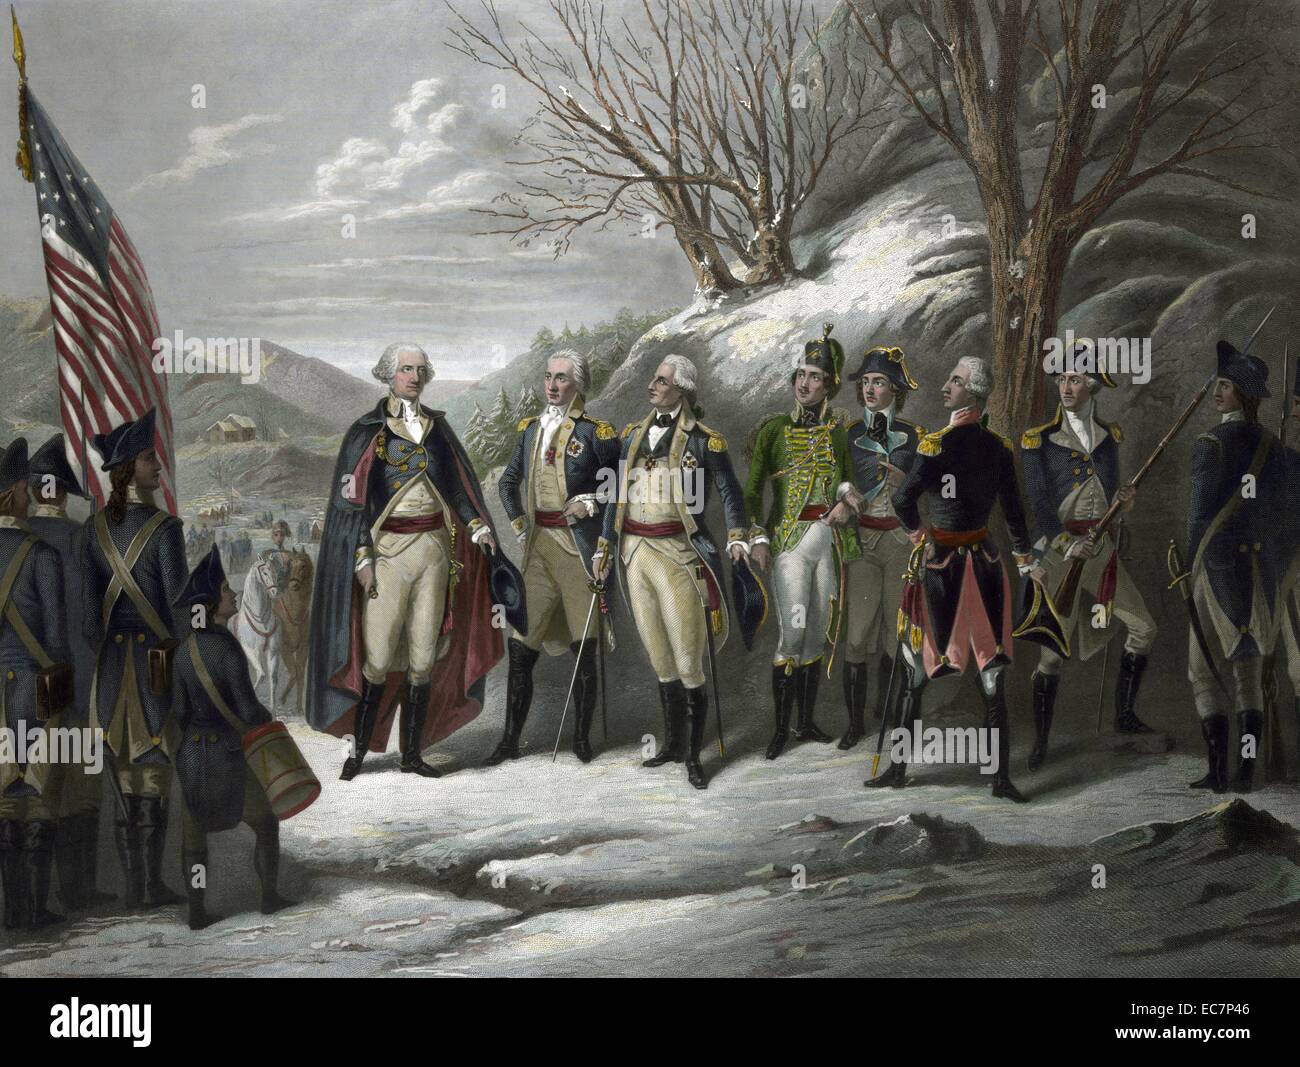 Die Helden der Revolution. Le général Washington debout avec Johann De Kalb, le baron Von Steuben, Kazimierz Pulaski, Tadeusz Kosciuszko, Lafayette, John petite, et d'autres officiers au cours de la guerre révolutionnaire. Banque D'Images